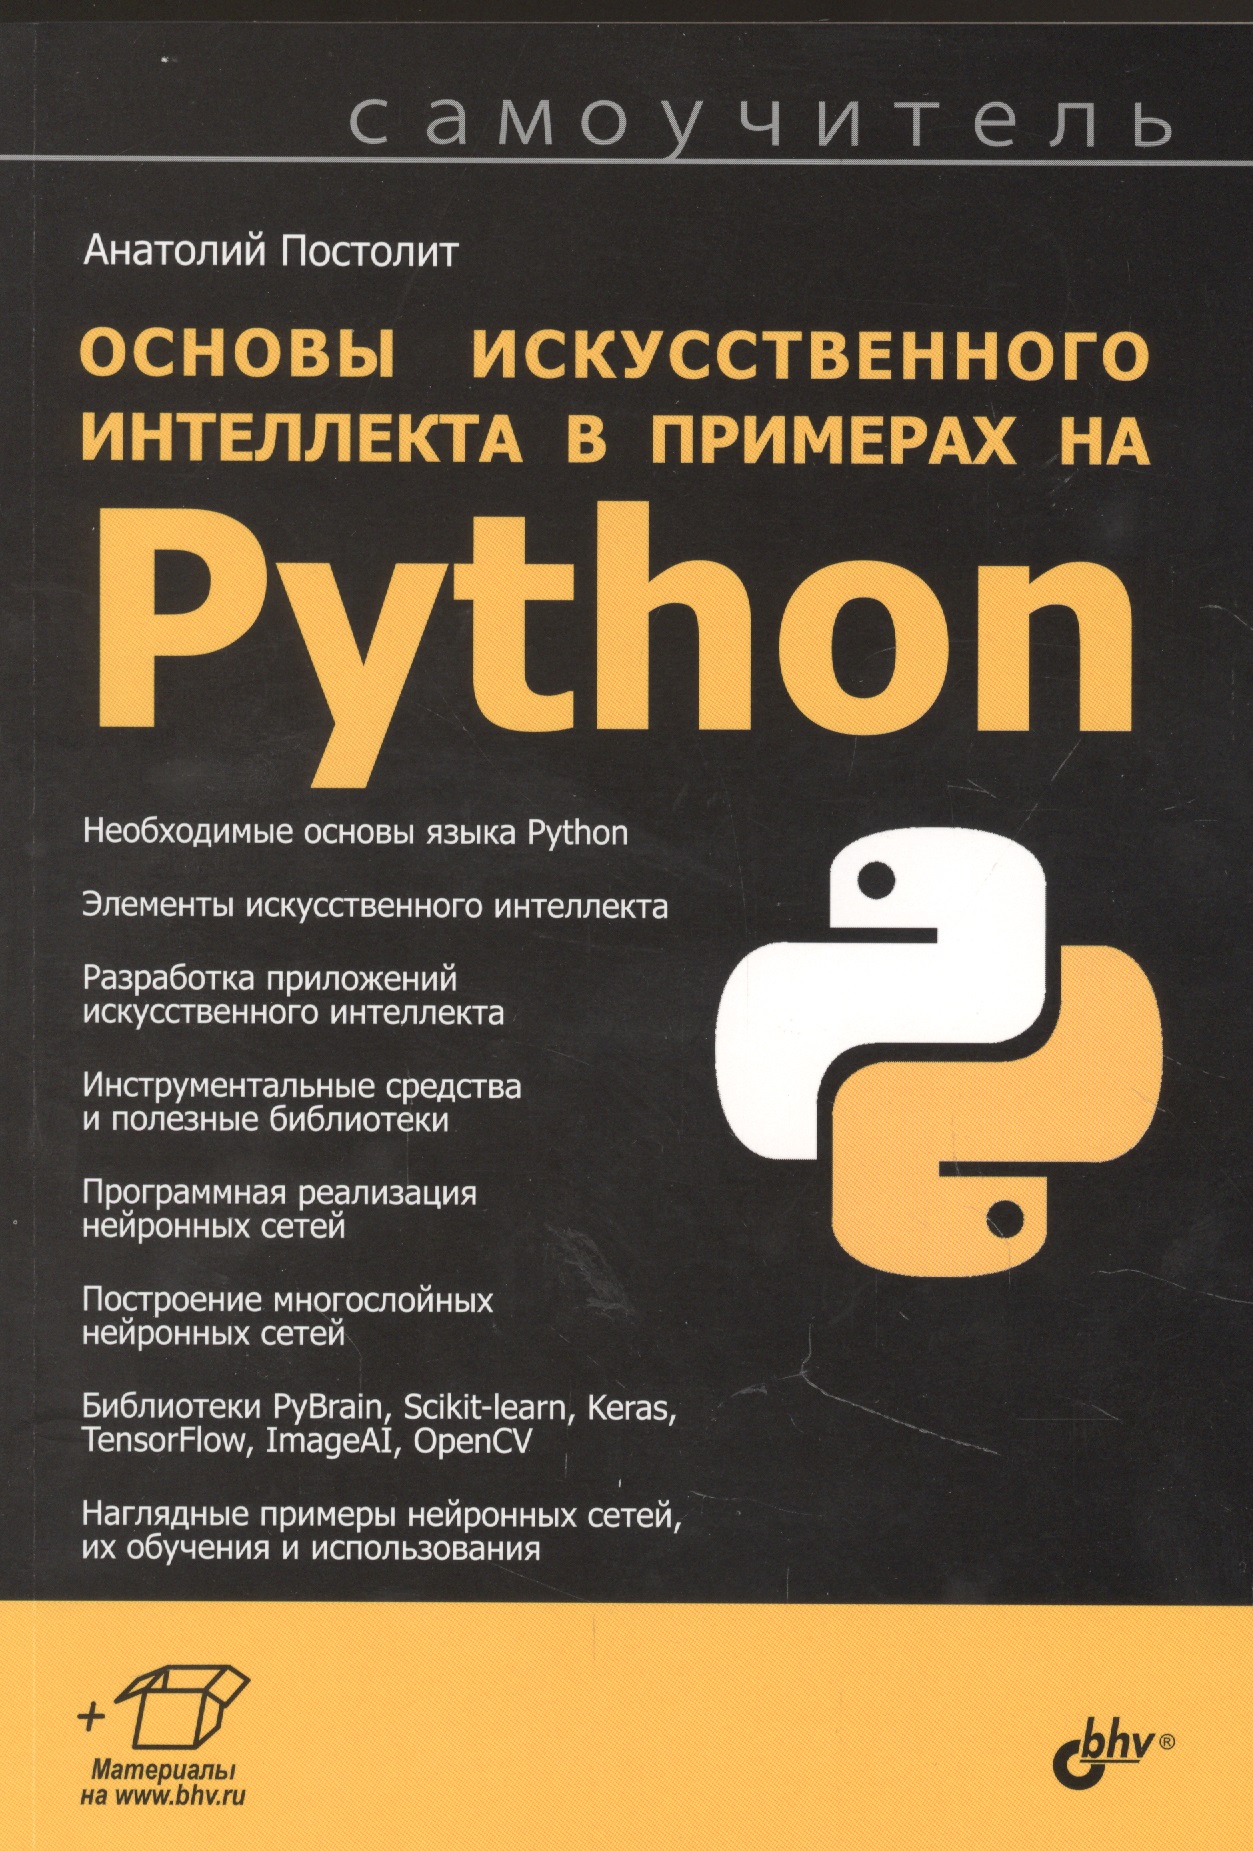 постолит анатолий python django и pycharm для начинающих Постолит Анатолий Основы искусственного интеллекта в примерах на Python. Самоучитель